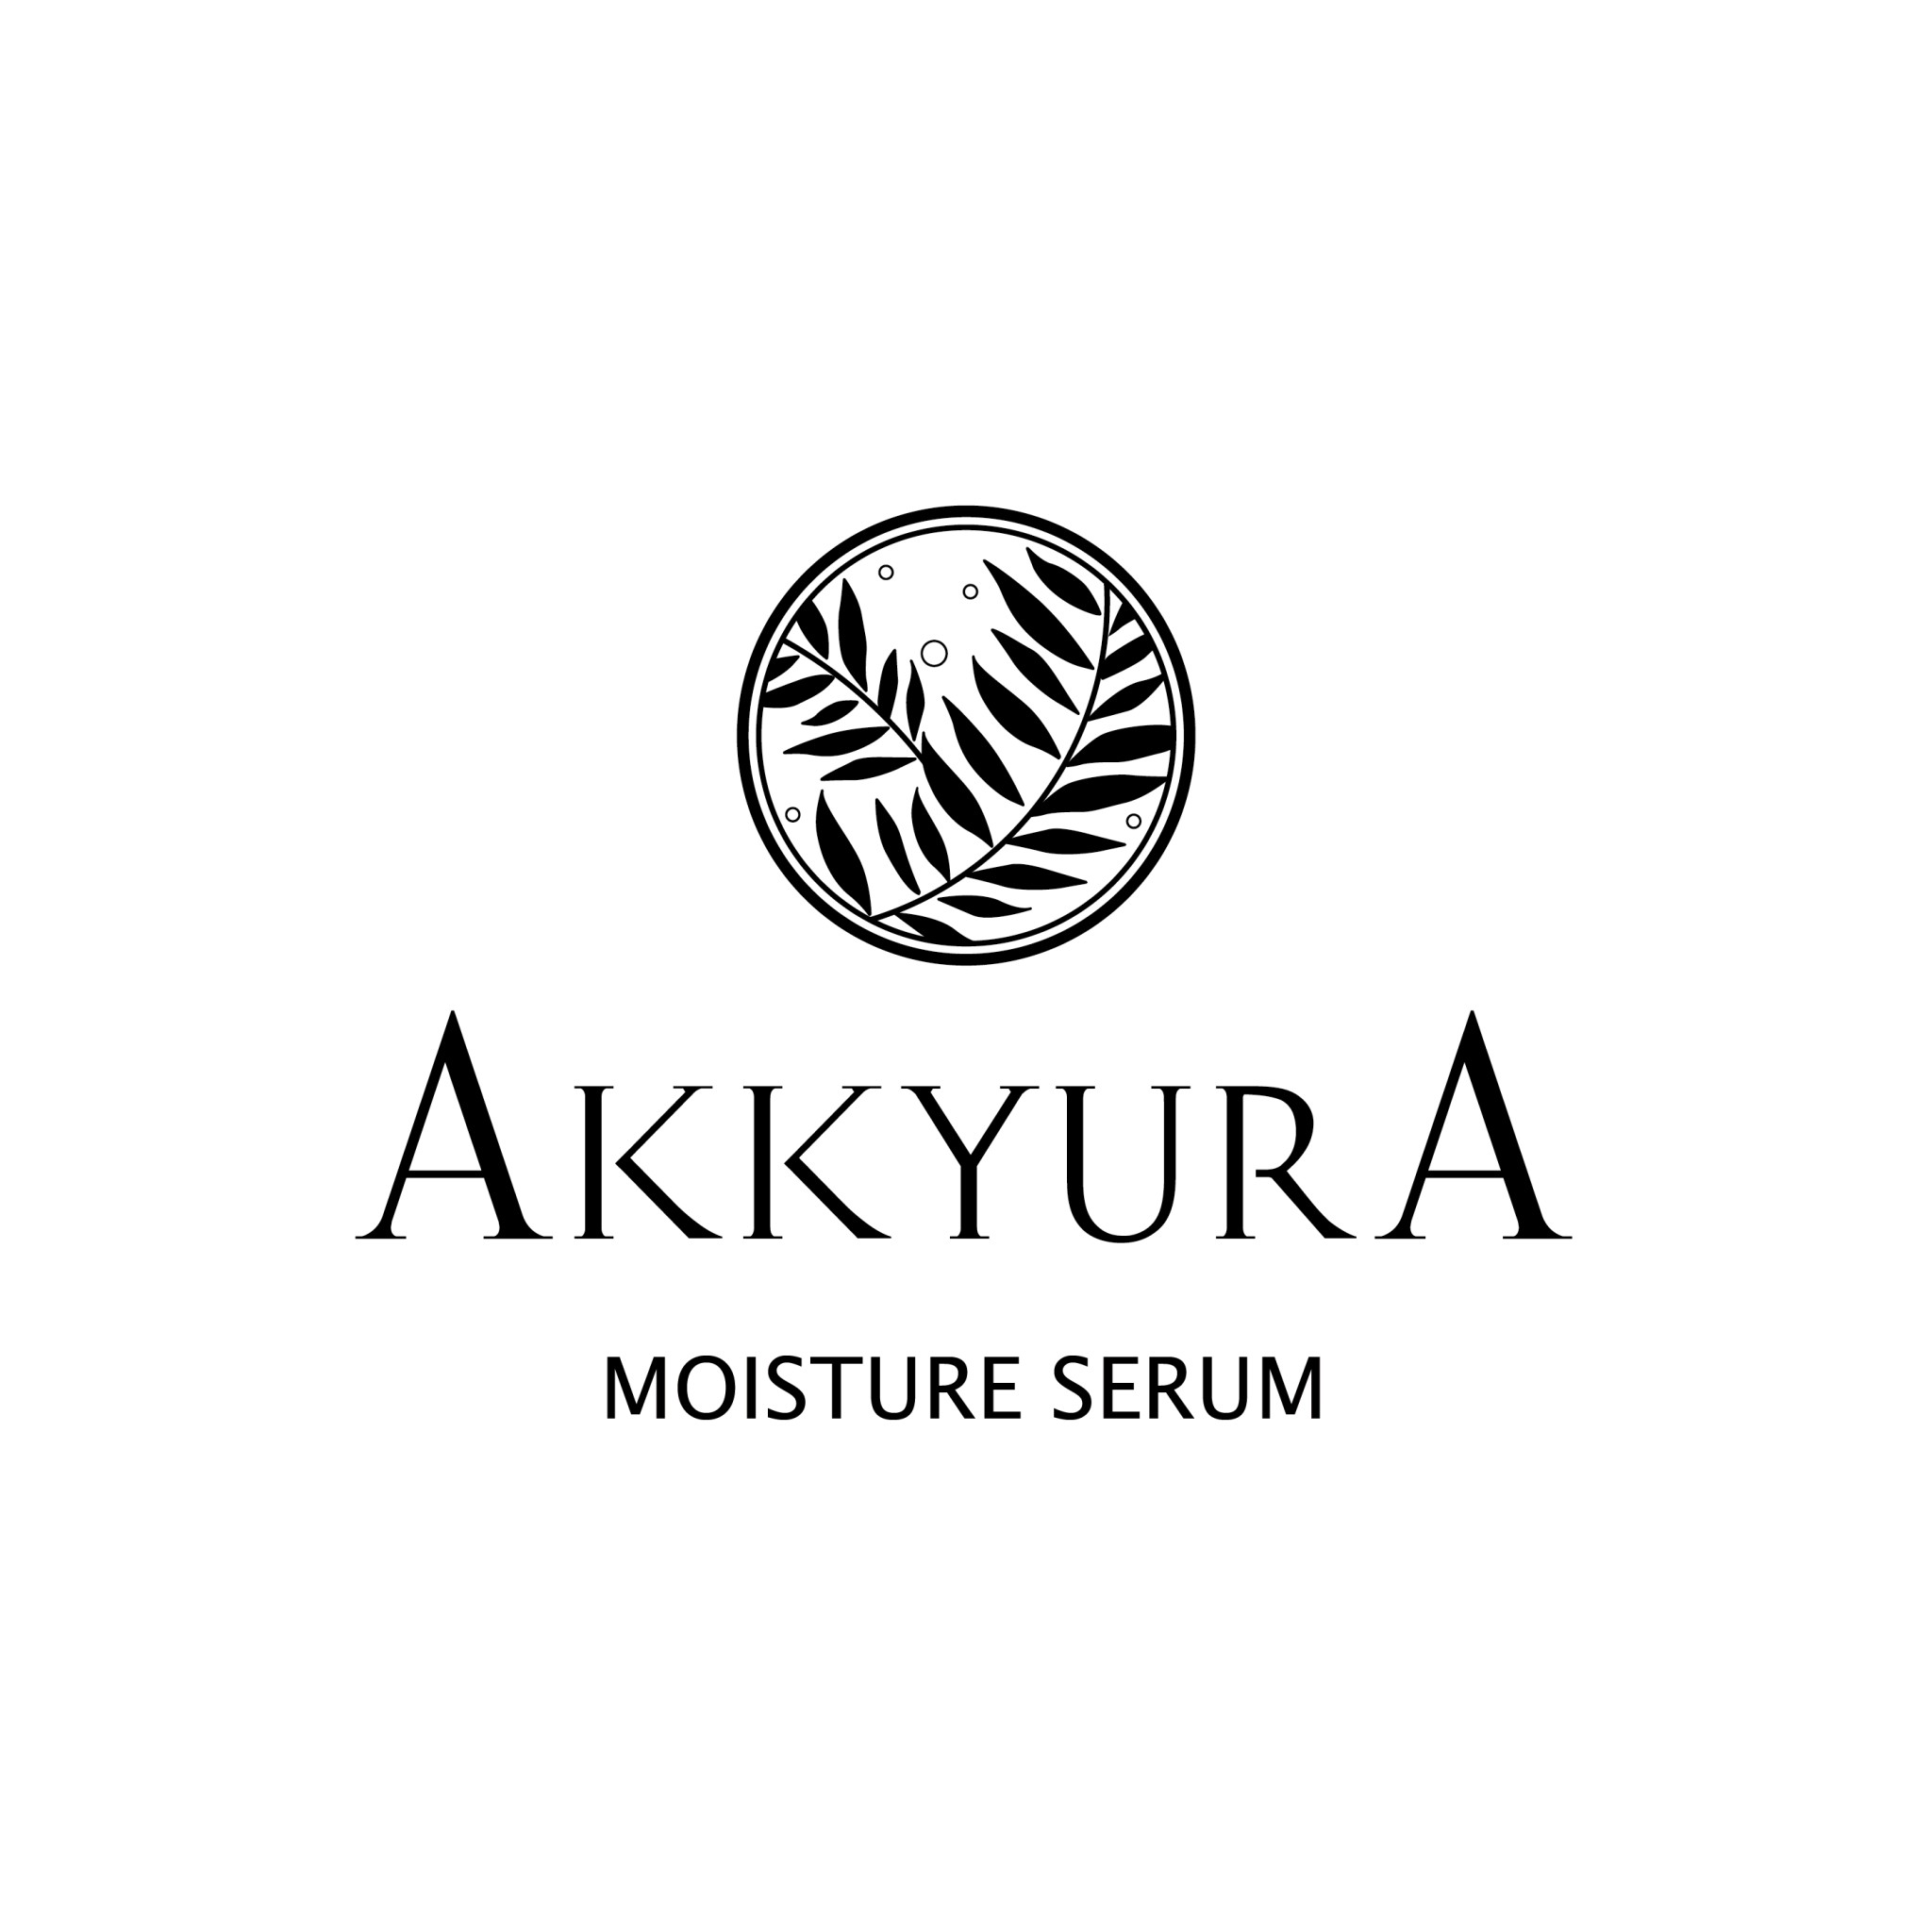 2021年2月1日 海藻「紀州あかもく」を使用した化粧品「AKKYURA(アキュラ)」を販売 スーパーフードとして注目のアカモクが化粧品に！